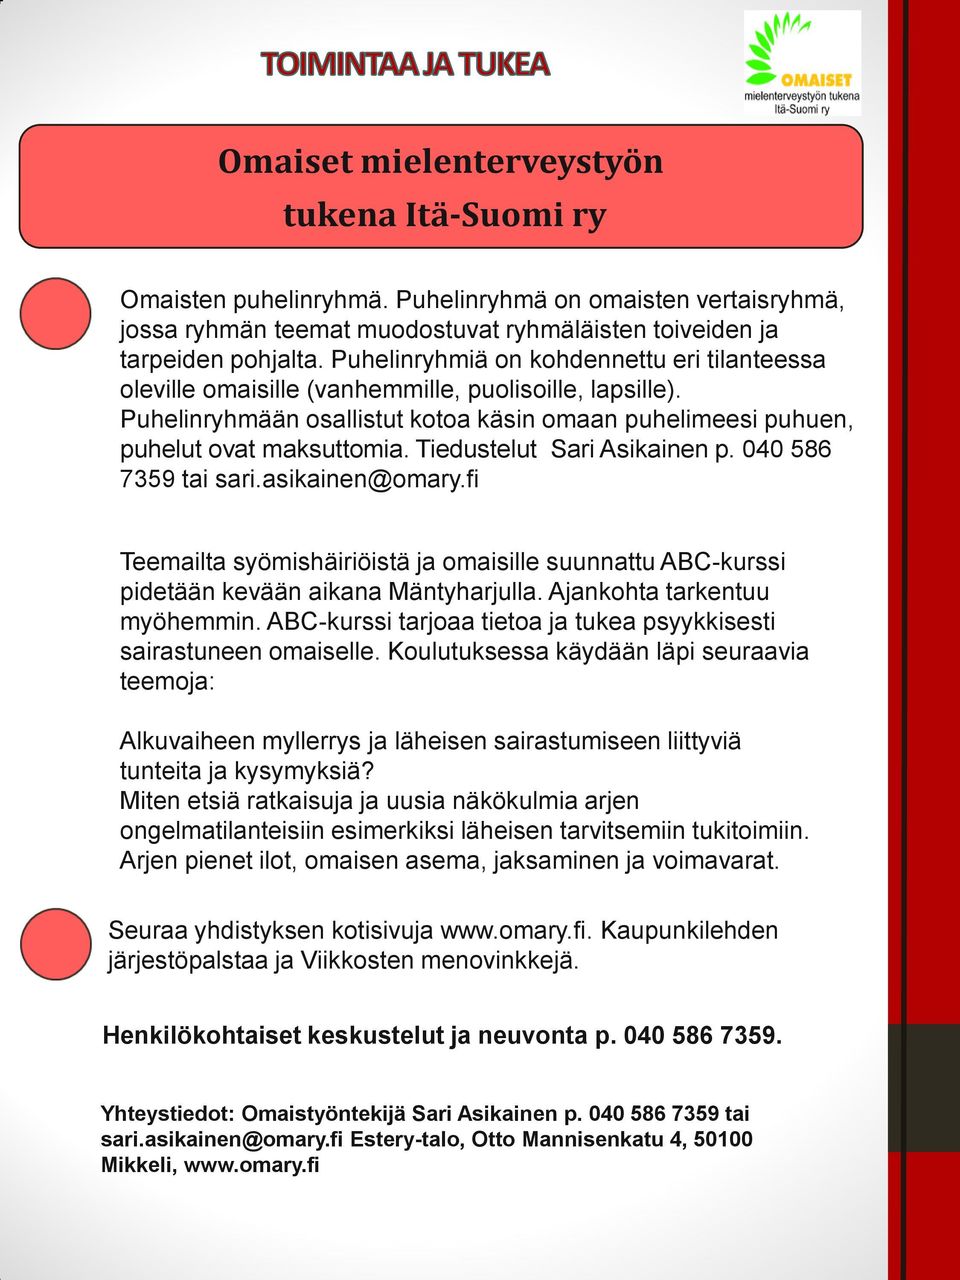 Tiedustelut Sari Asikainen p. 040 586 7359 tai sari.asikainen@omary.fi Teemailta syömishäiriöistä ja omaisille suunnattu ABC-kurssi pidetään kevään aikana Mäntyharjulla. Ajankohta tarkentuu myöhemmin.